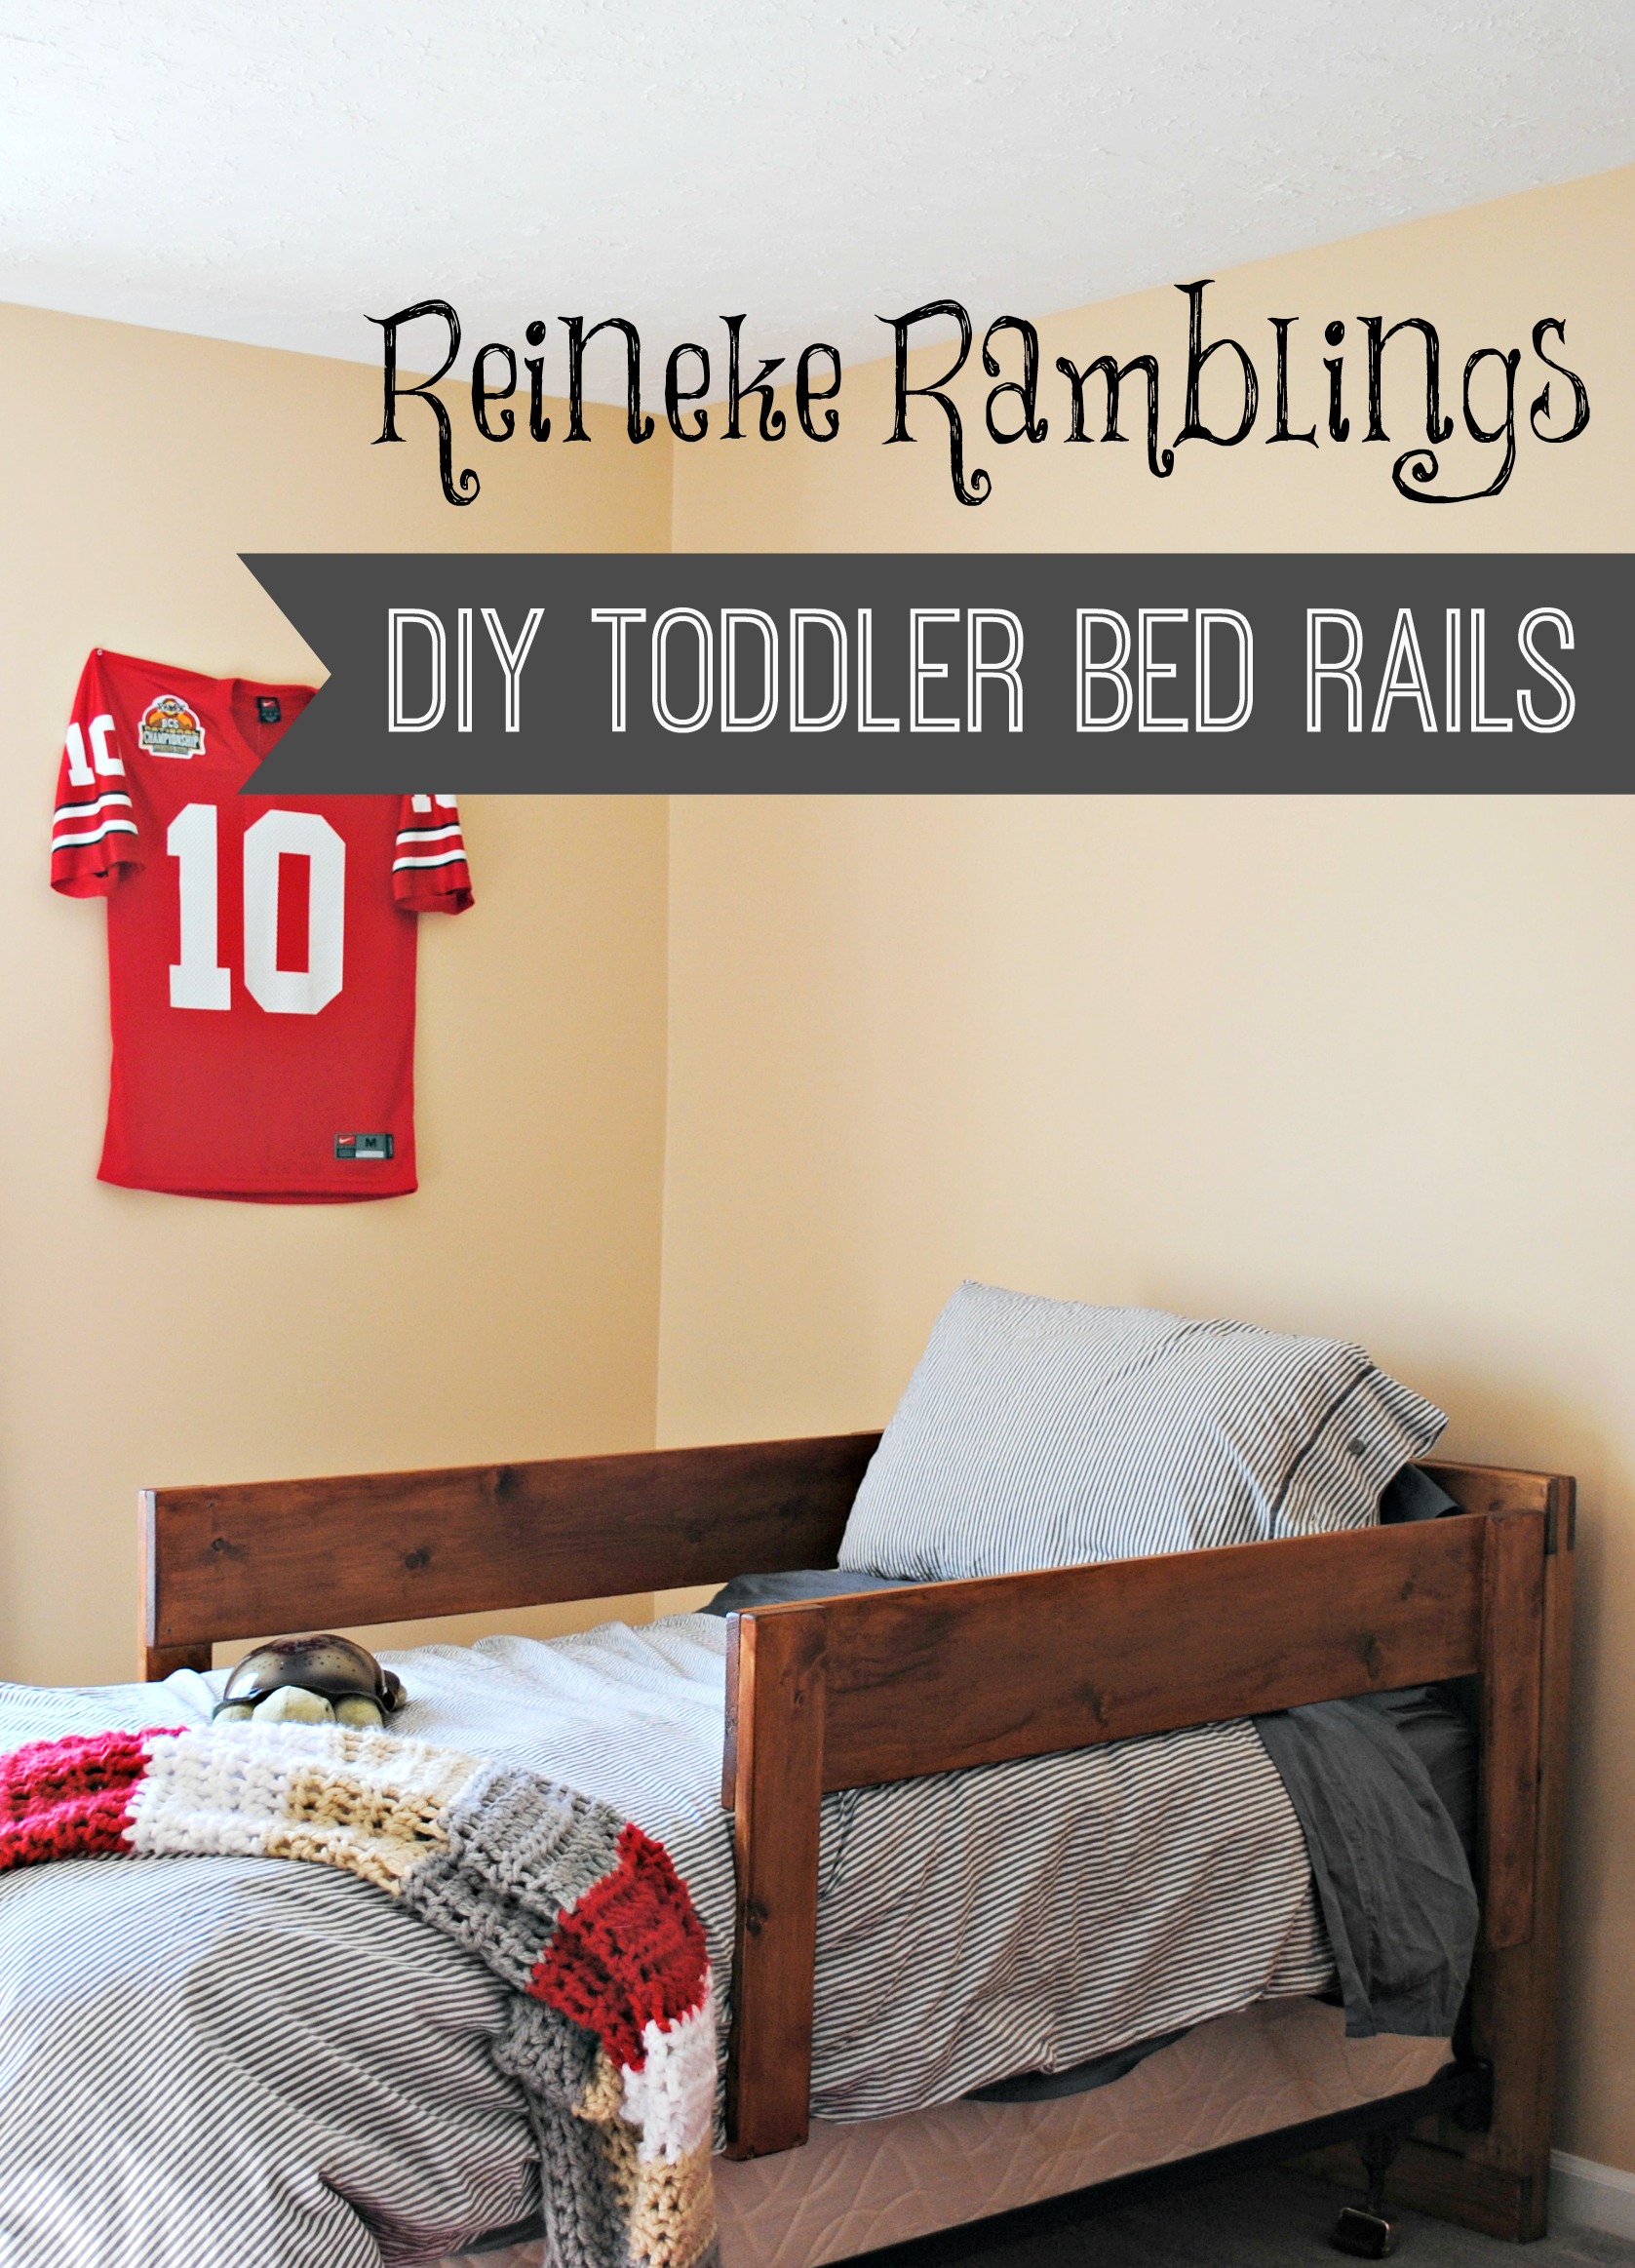 DIY Toddler Bed Rails